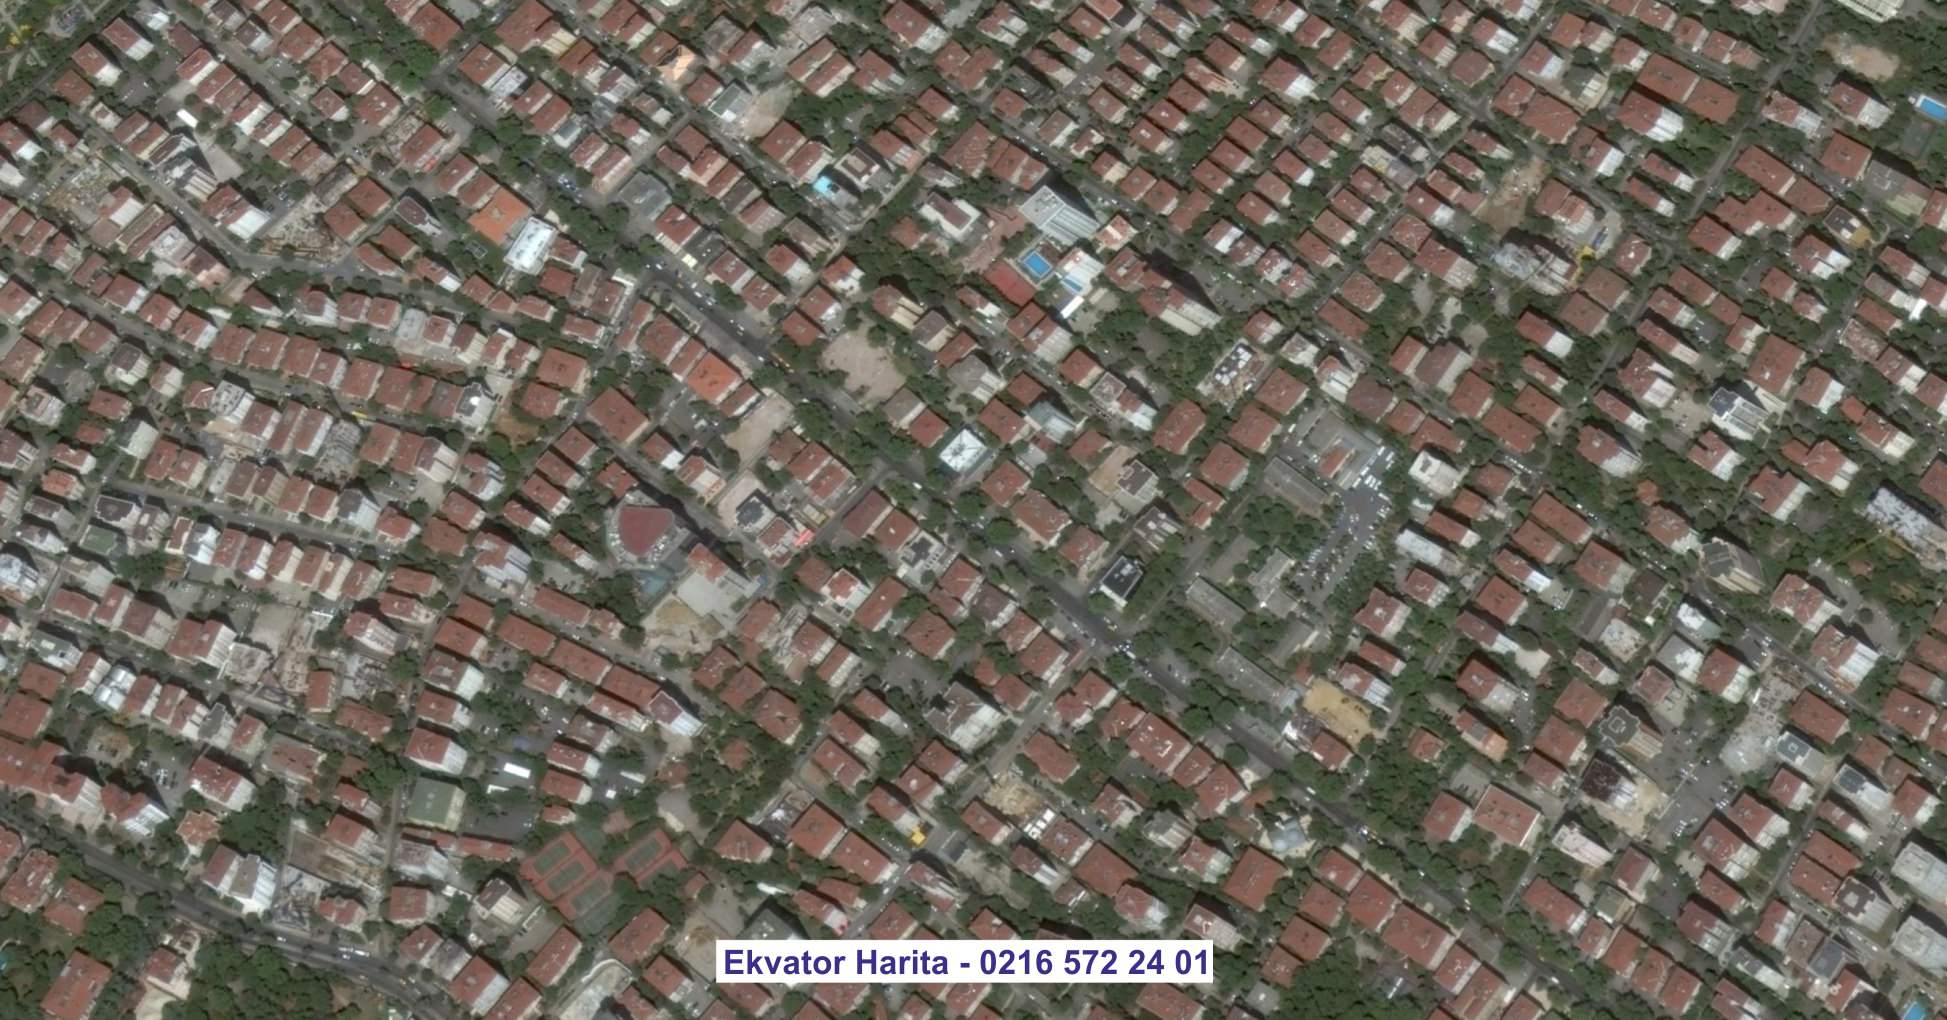 Giresun Uydu Görüntüsü Örnek Fotoğrafı